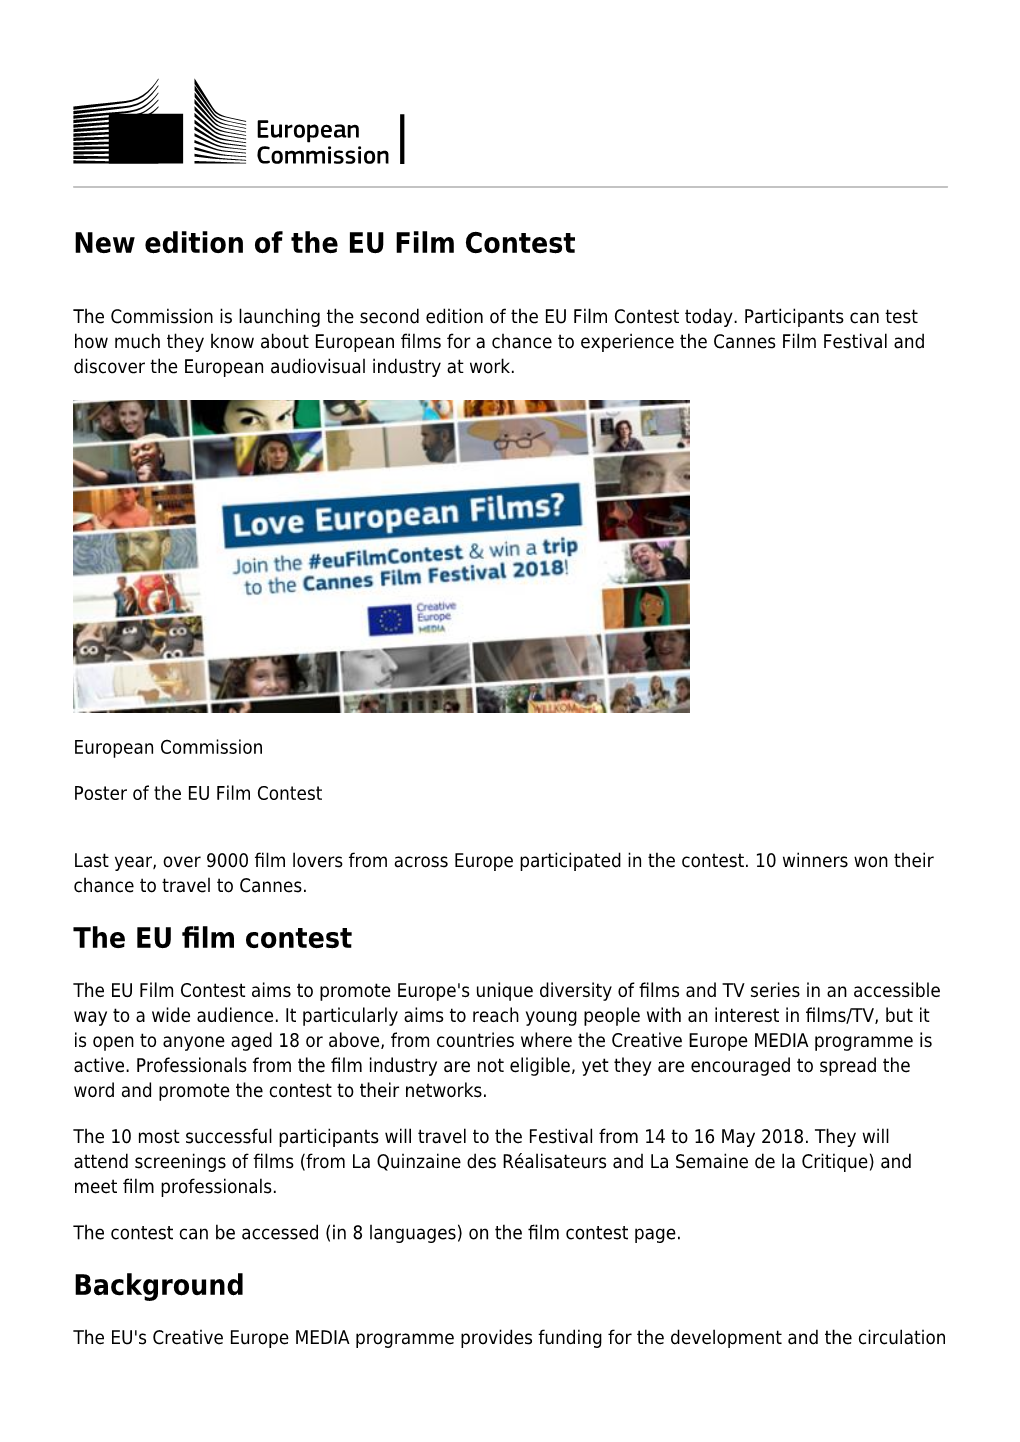 The EU Film Contest